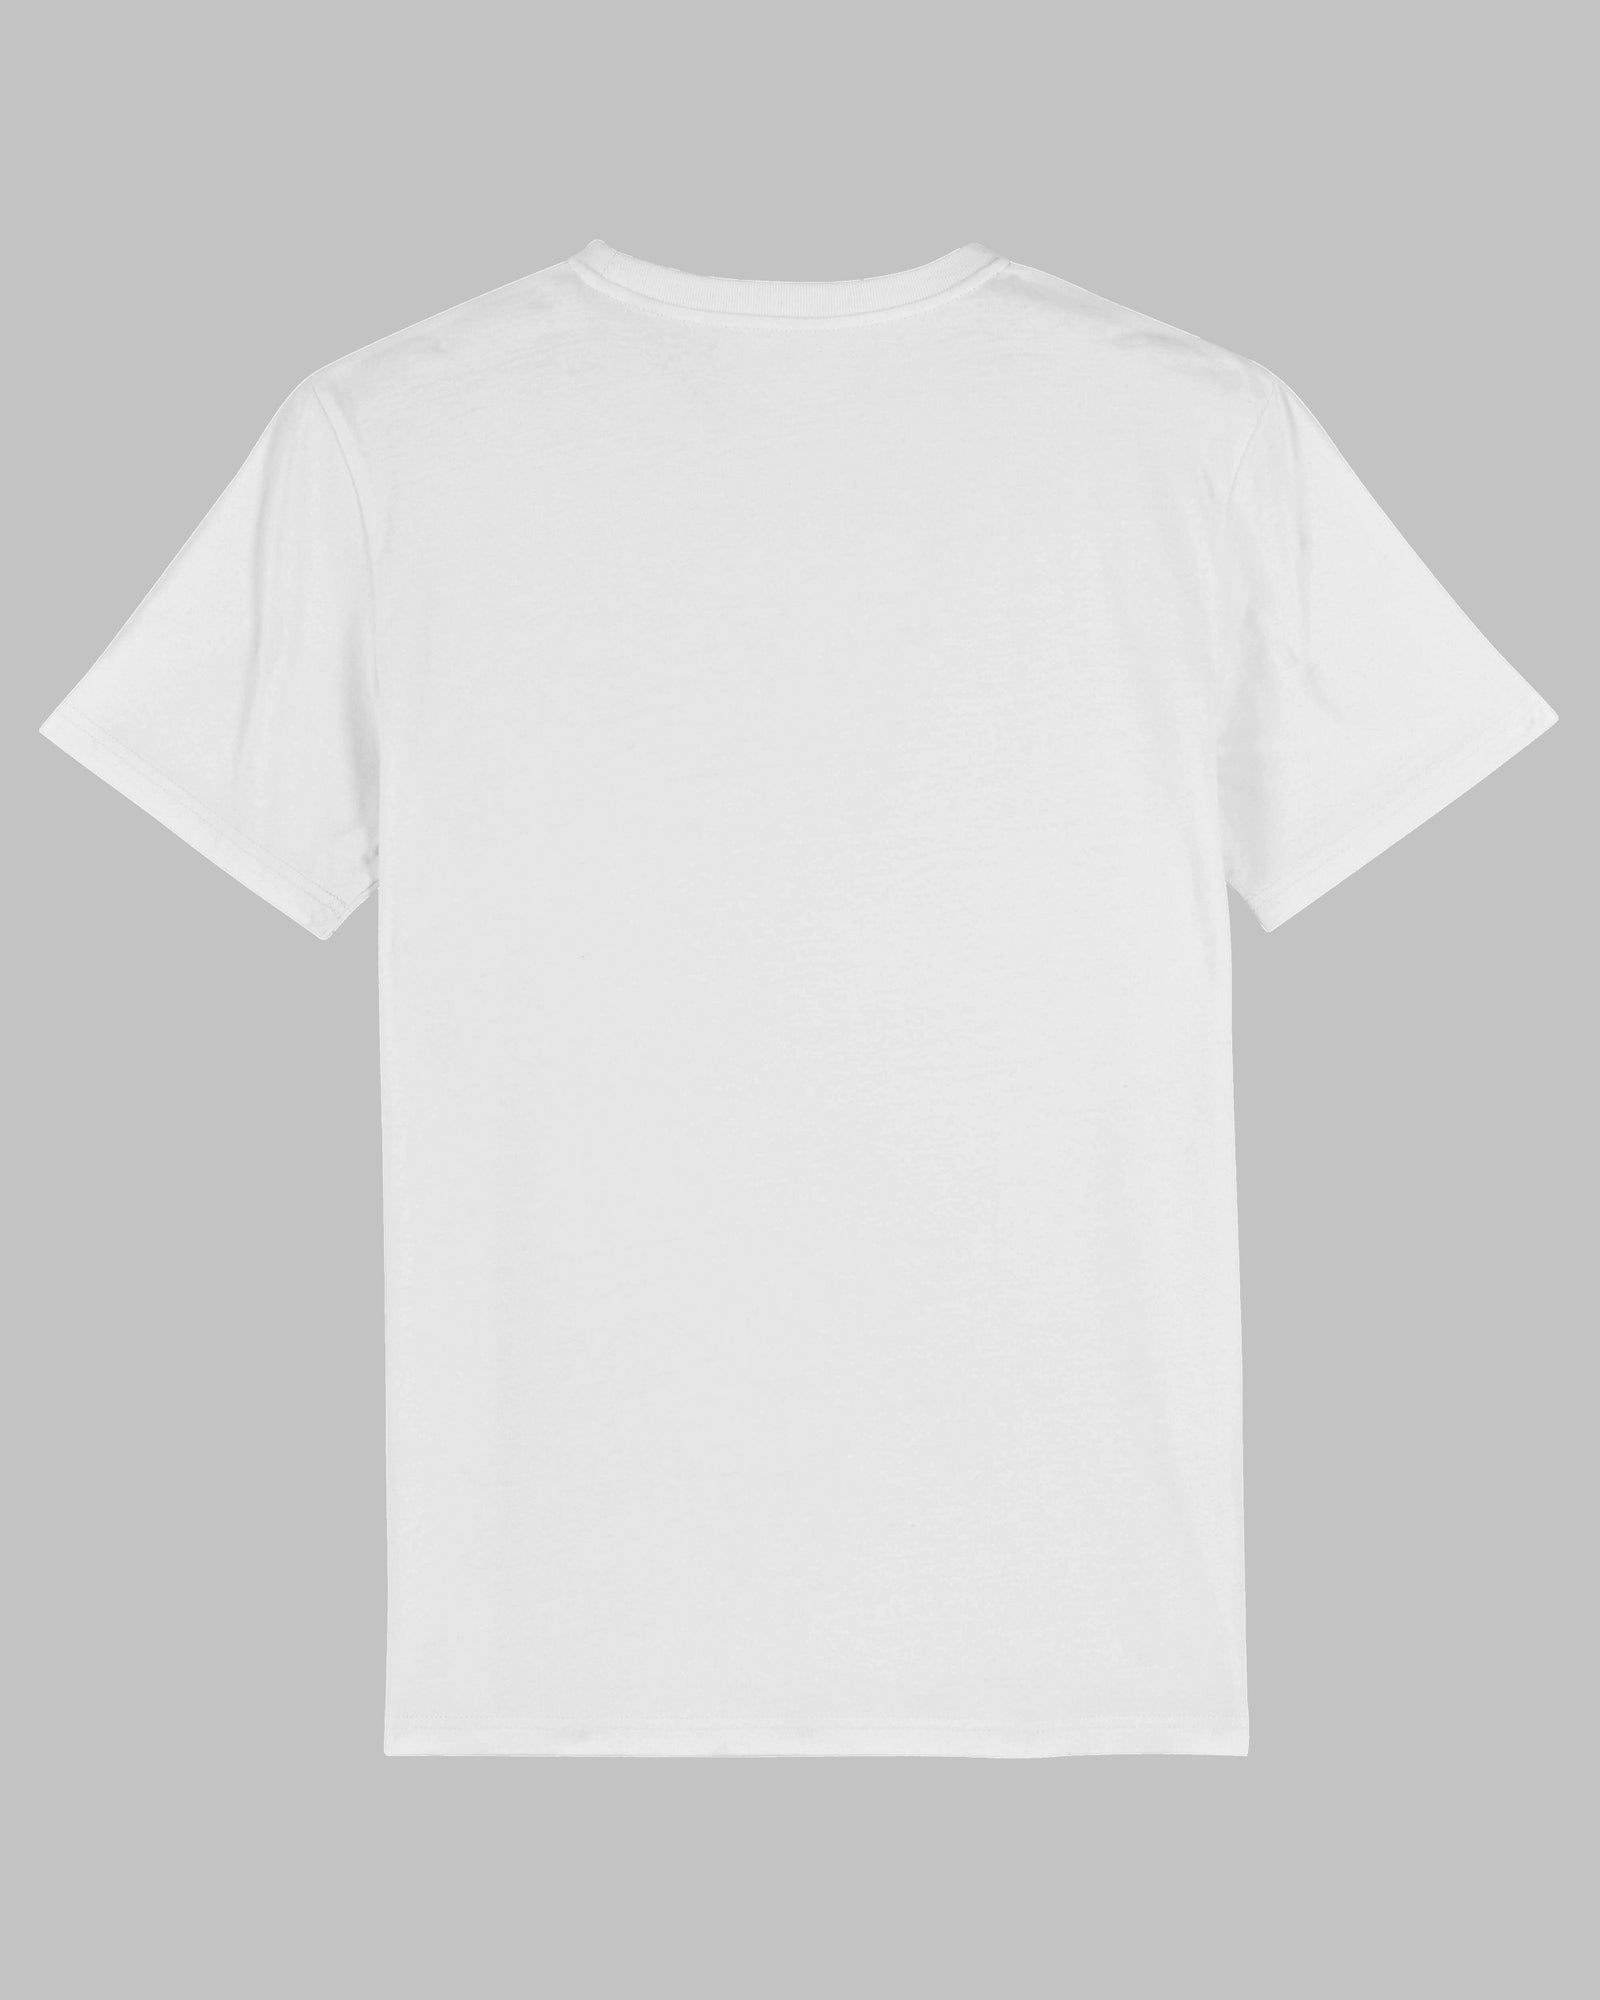 Ich liebe es, wenn meine Frau mich zocken lässt | 3-Style T-Shirt